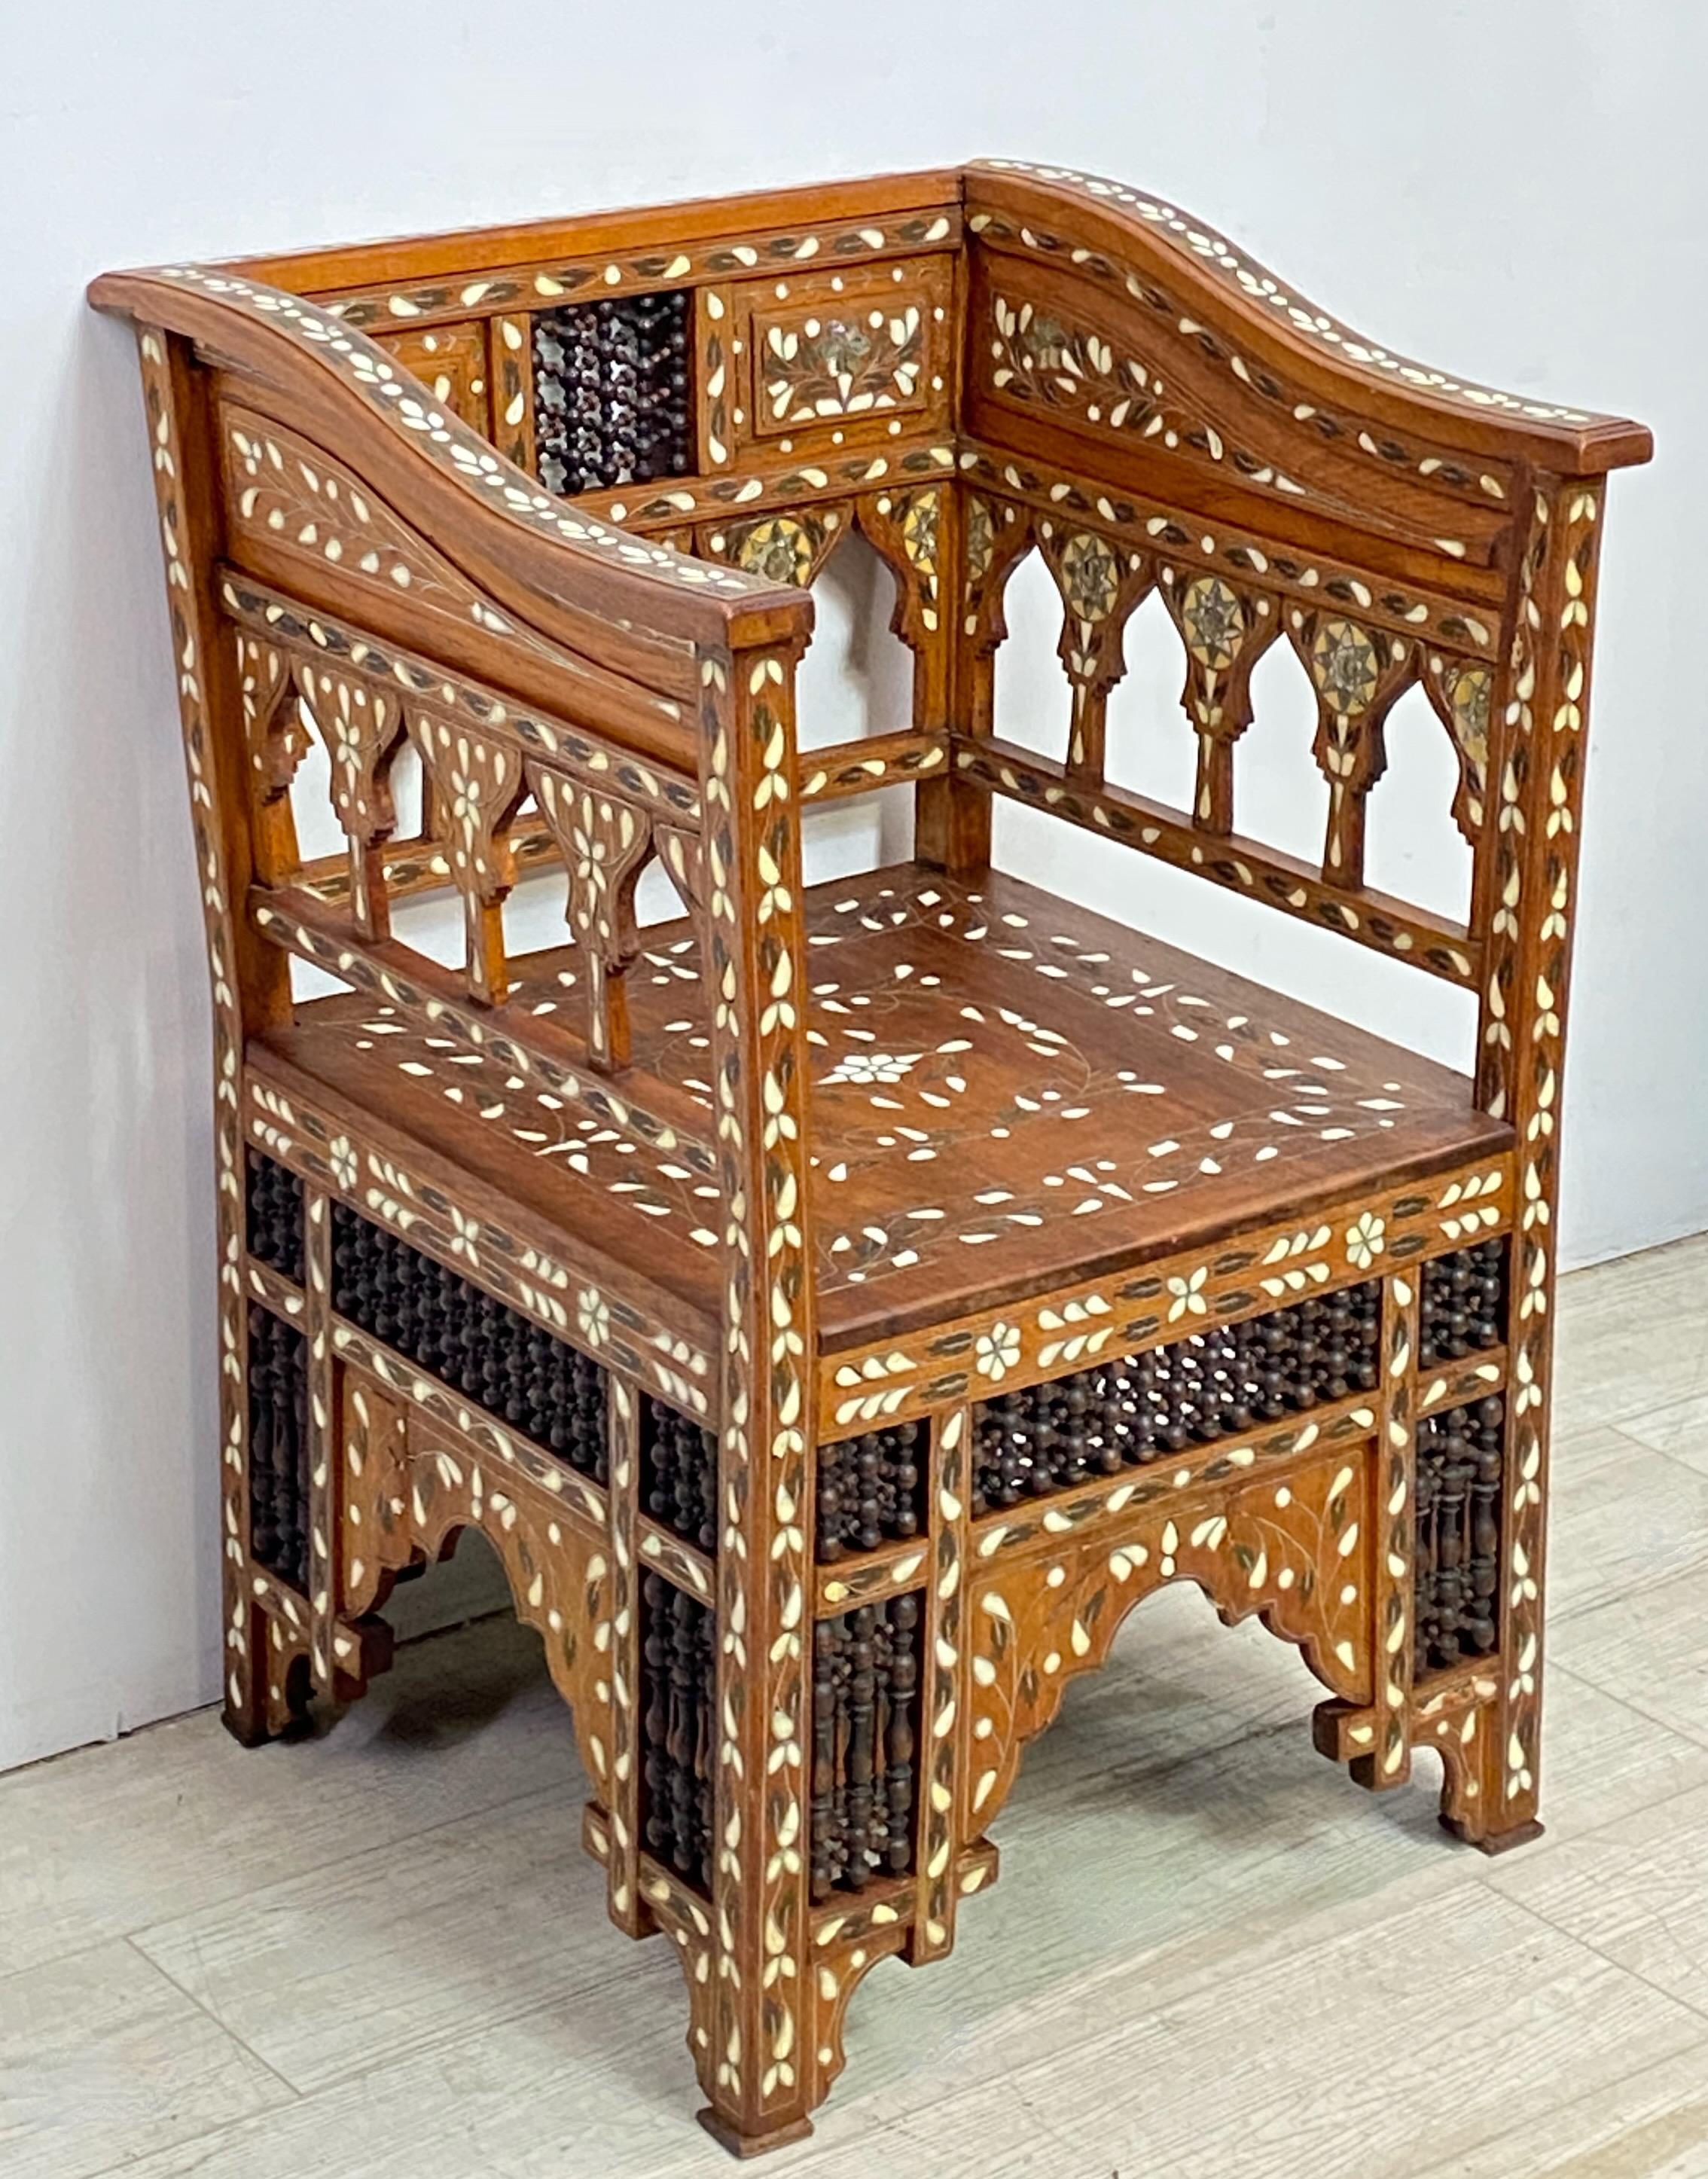 Un exemple très décoratif de fauteuil de style mauresque syrien sculpté à la main à la fin du XIXe siècle ou au début du XXe siècle, avec un coussin en velours et appliqué. Noyer avec frettes tournées à la main et incrustations élaborées de laiton,